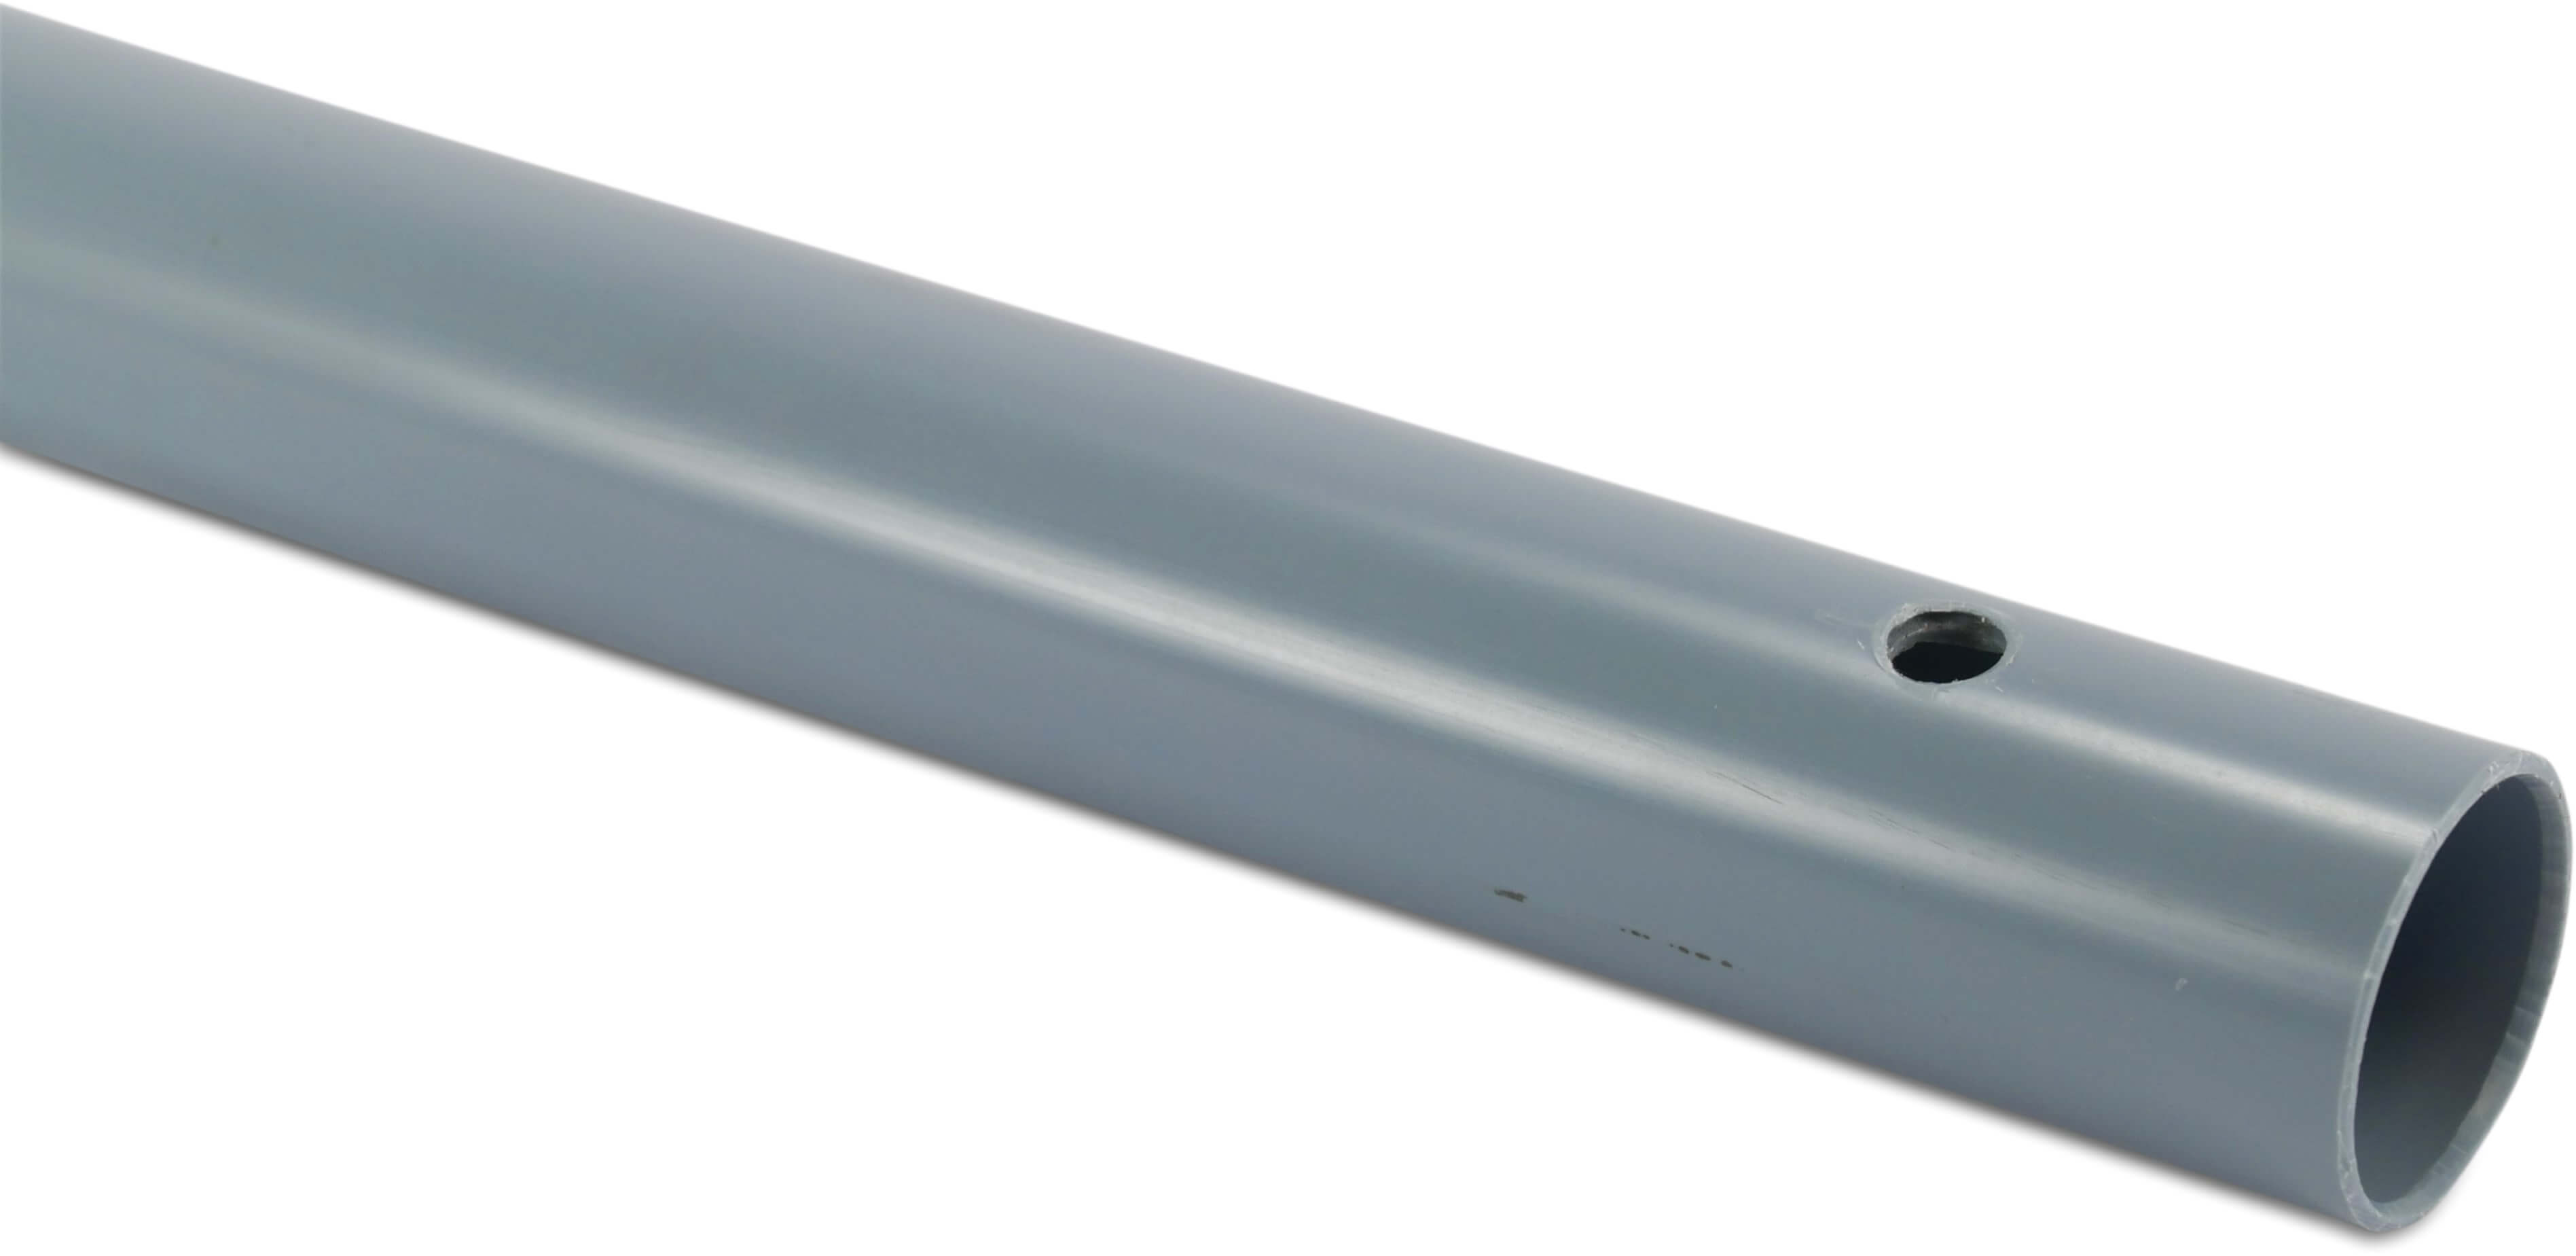 Beregnungsrohr PVC-U 32 mm x 1,8 mm Klebemuffe x Glatt 10bar 3/8WW Hellblau 50cm 4,54m